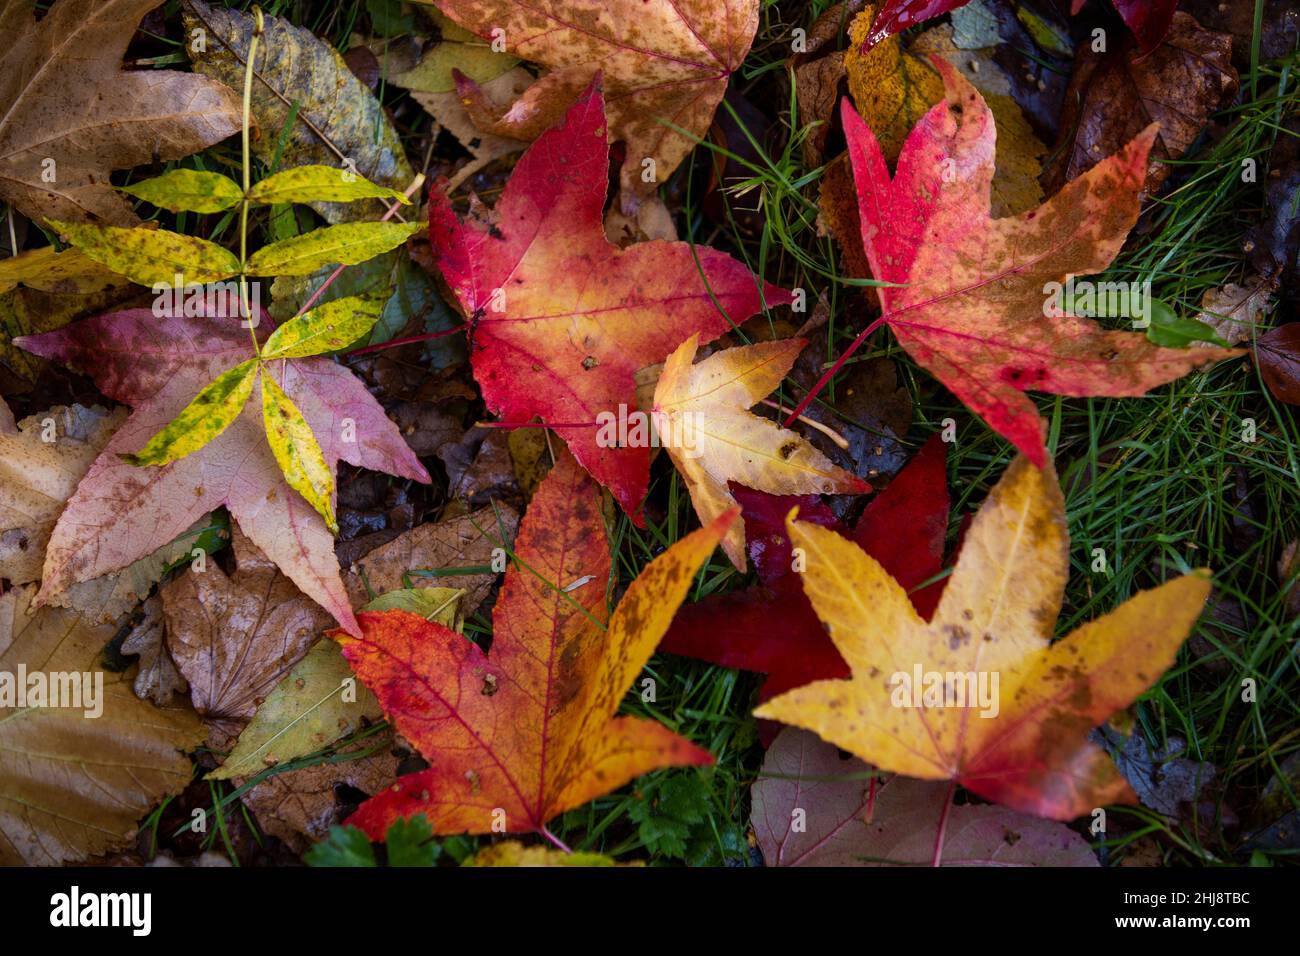 Royaume-Uni, Angleterre, Cheshire, Goostrey, Université de Manchester,Jodrell Bank Arboretum en automne, feuilles colorées sur le sol Banque D'Images